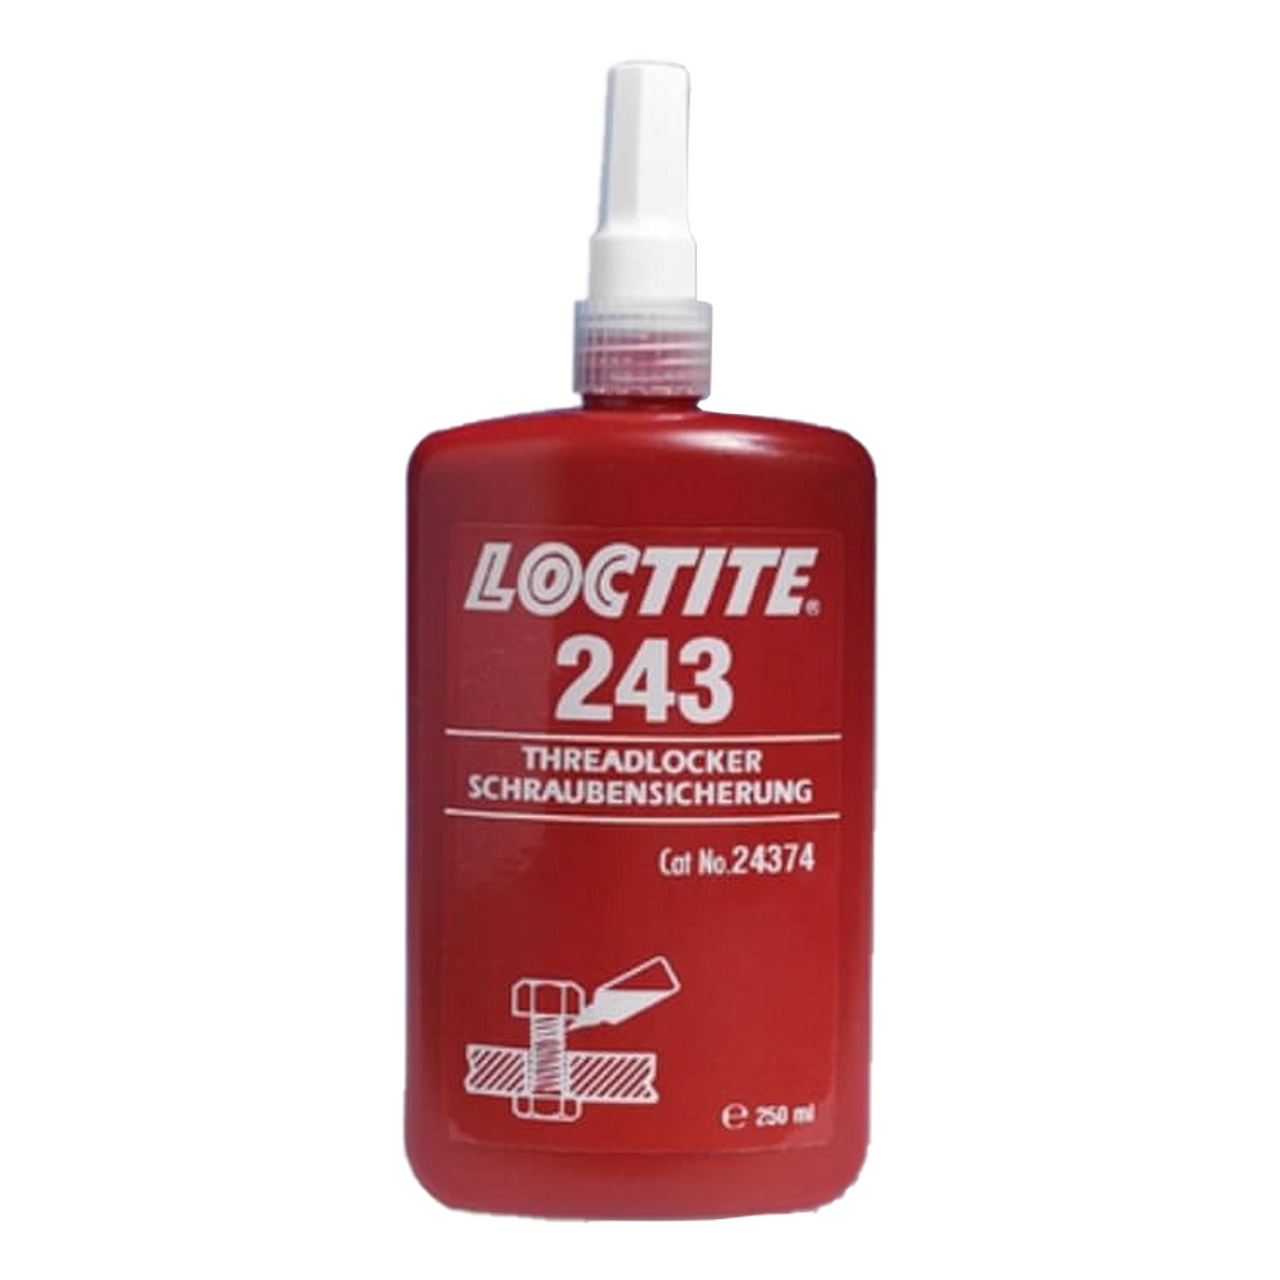 Loctite 243, threadlocking 